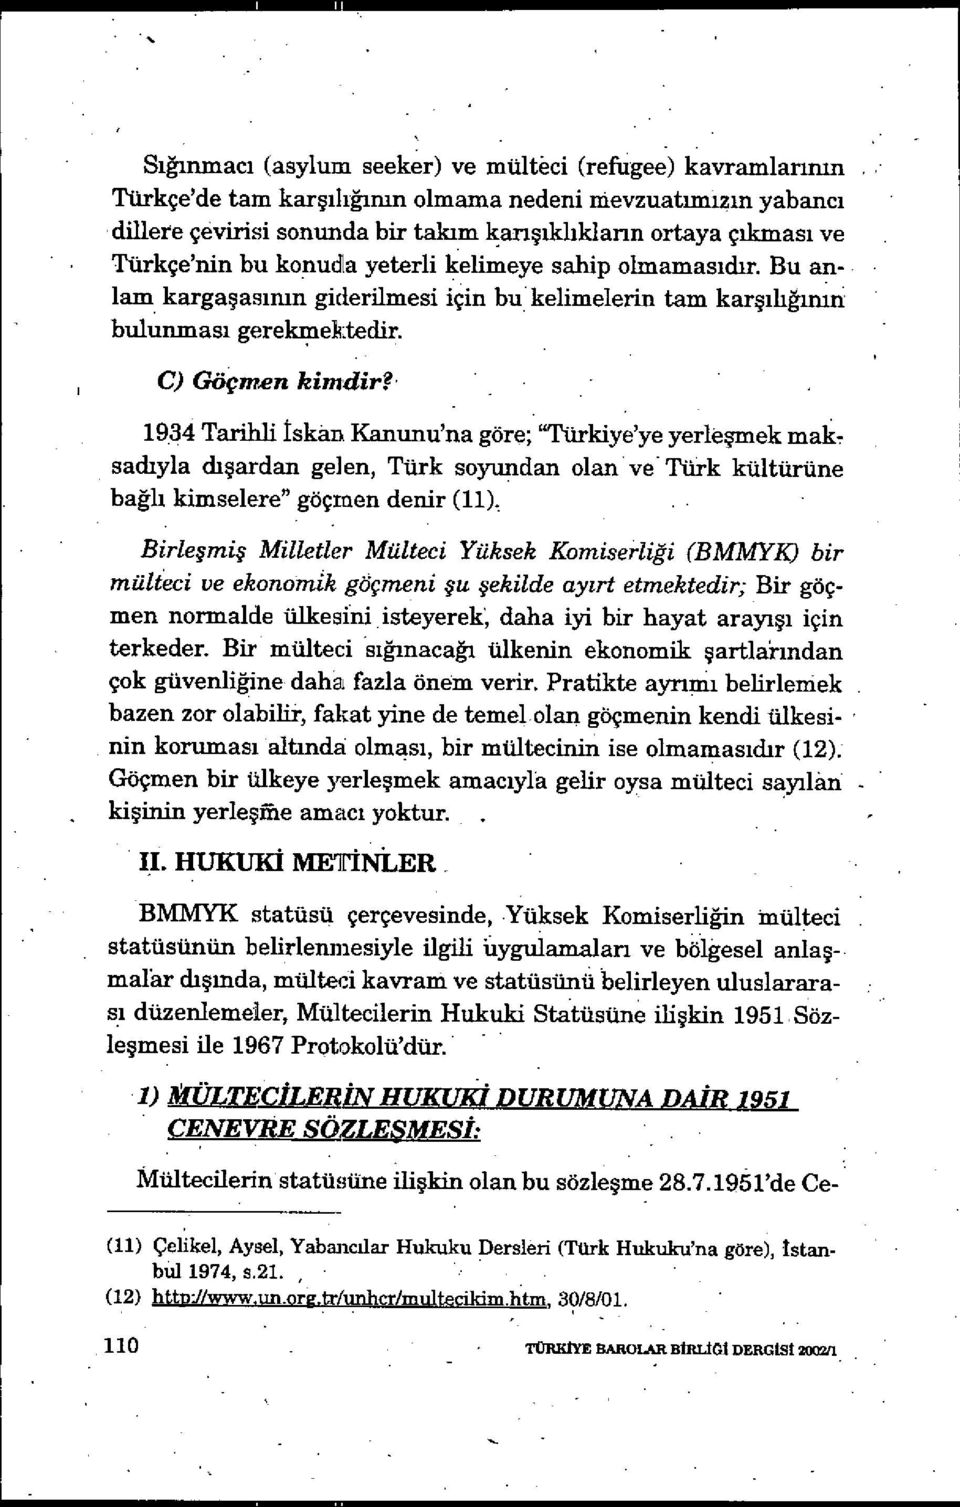 1934 Tarihli iskan Kanunu'na göre; "Türkiye'ye yerle şmek mak, sadıyla dışardan gelen, Türk soyundan olan ve Türk kültürüne bağlı kimselere" göçmen denir (11) Birleşmiş Milletler Mülteci Yüksek